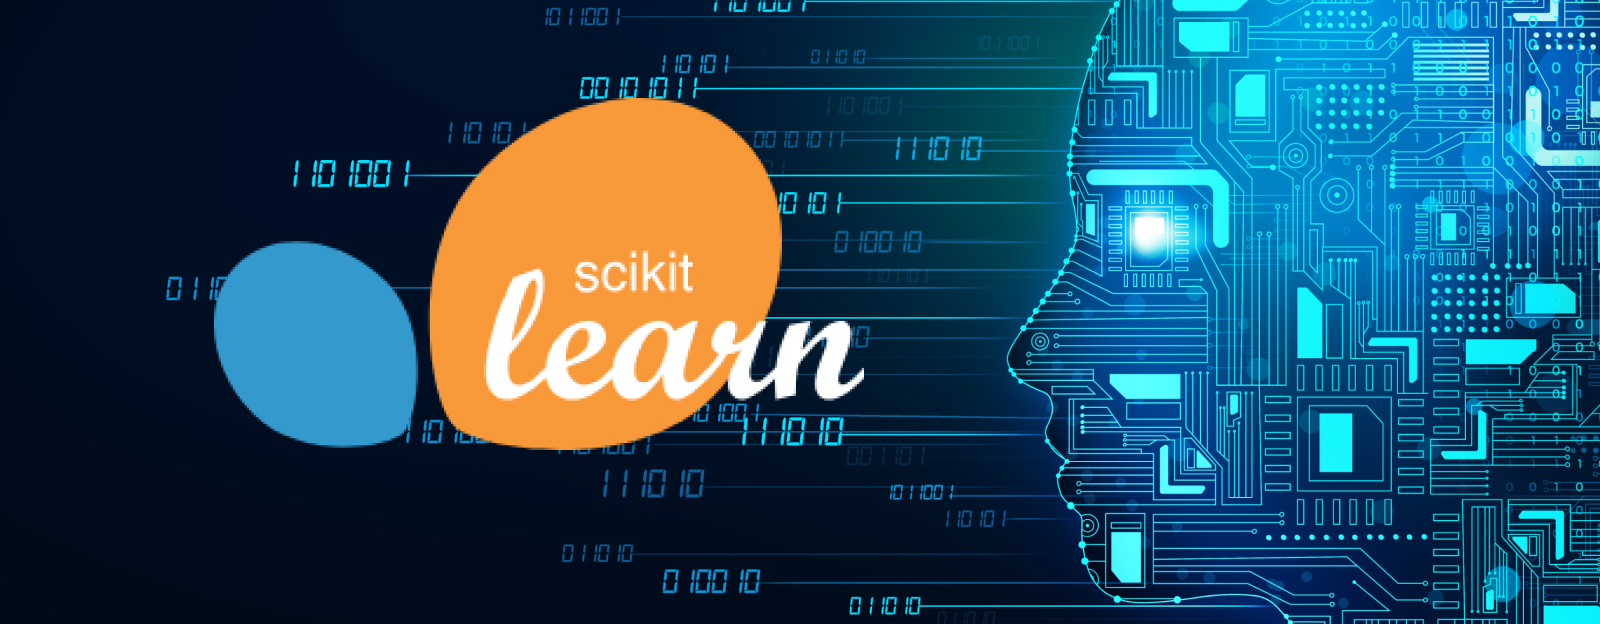 Scikit Learn for Machine Learning Algorithms